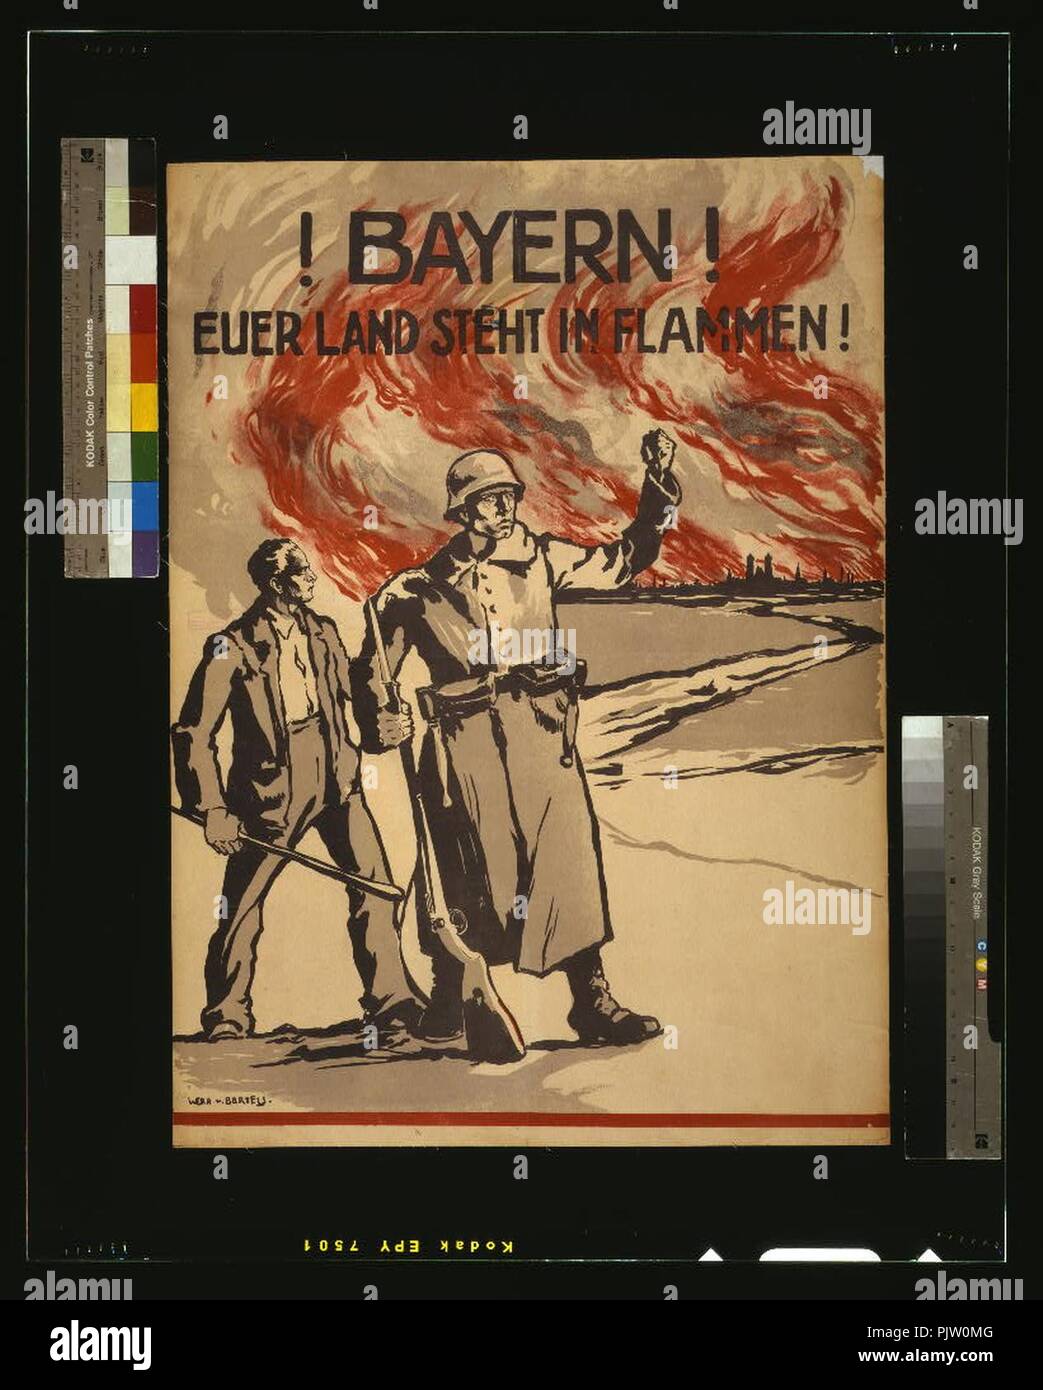 Bayern! Euerer Land steht in Flammen! Stock Photo